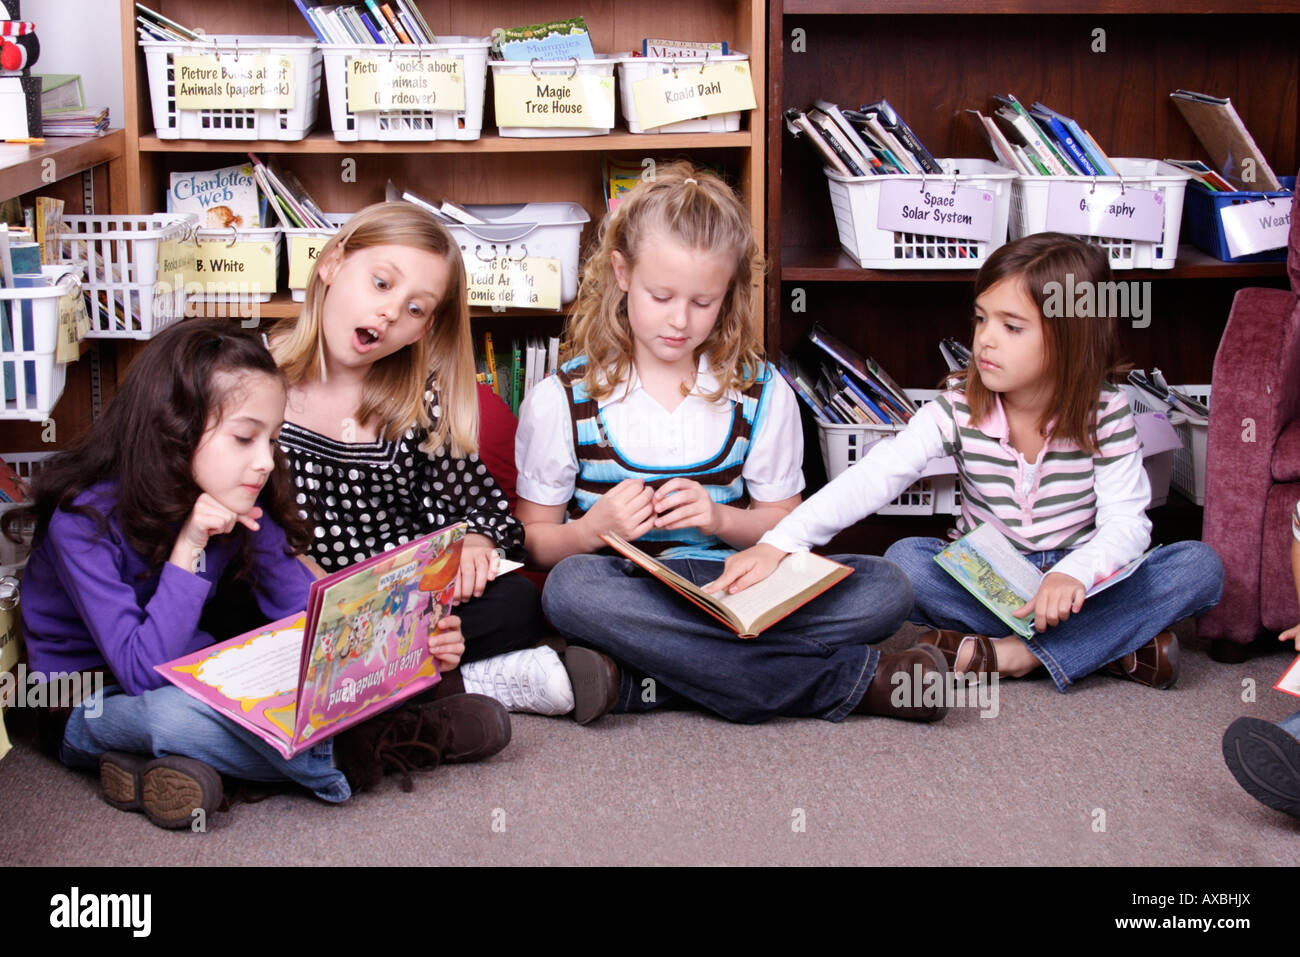 Stock Foto von vier jungen Mädchen sitzen auf dem Boden, die Bücher zu lesen Stockfoto